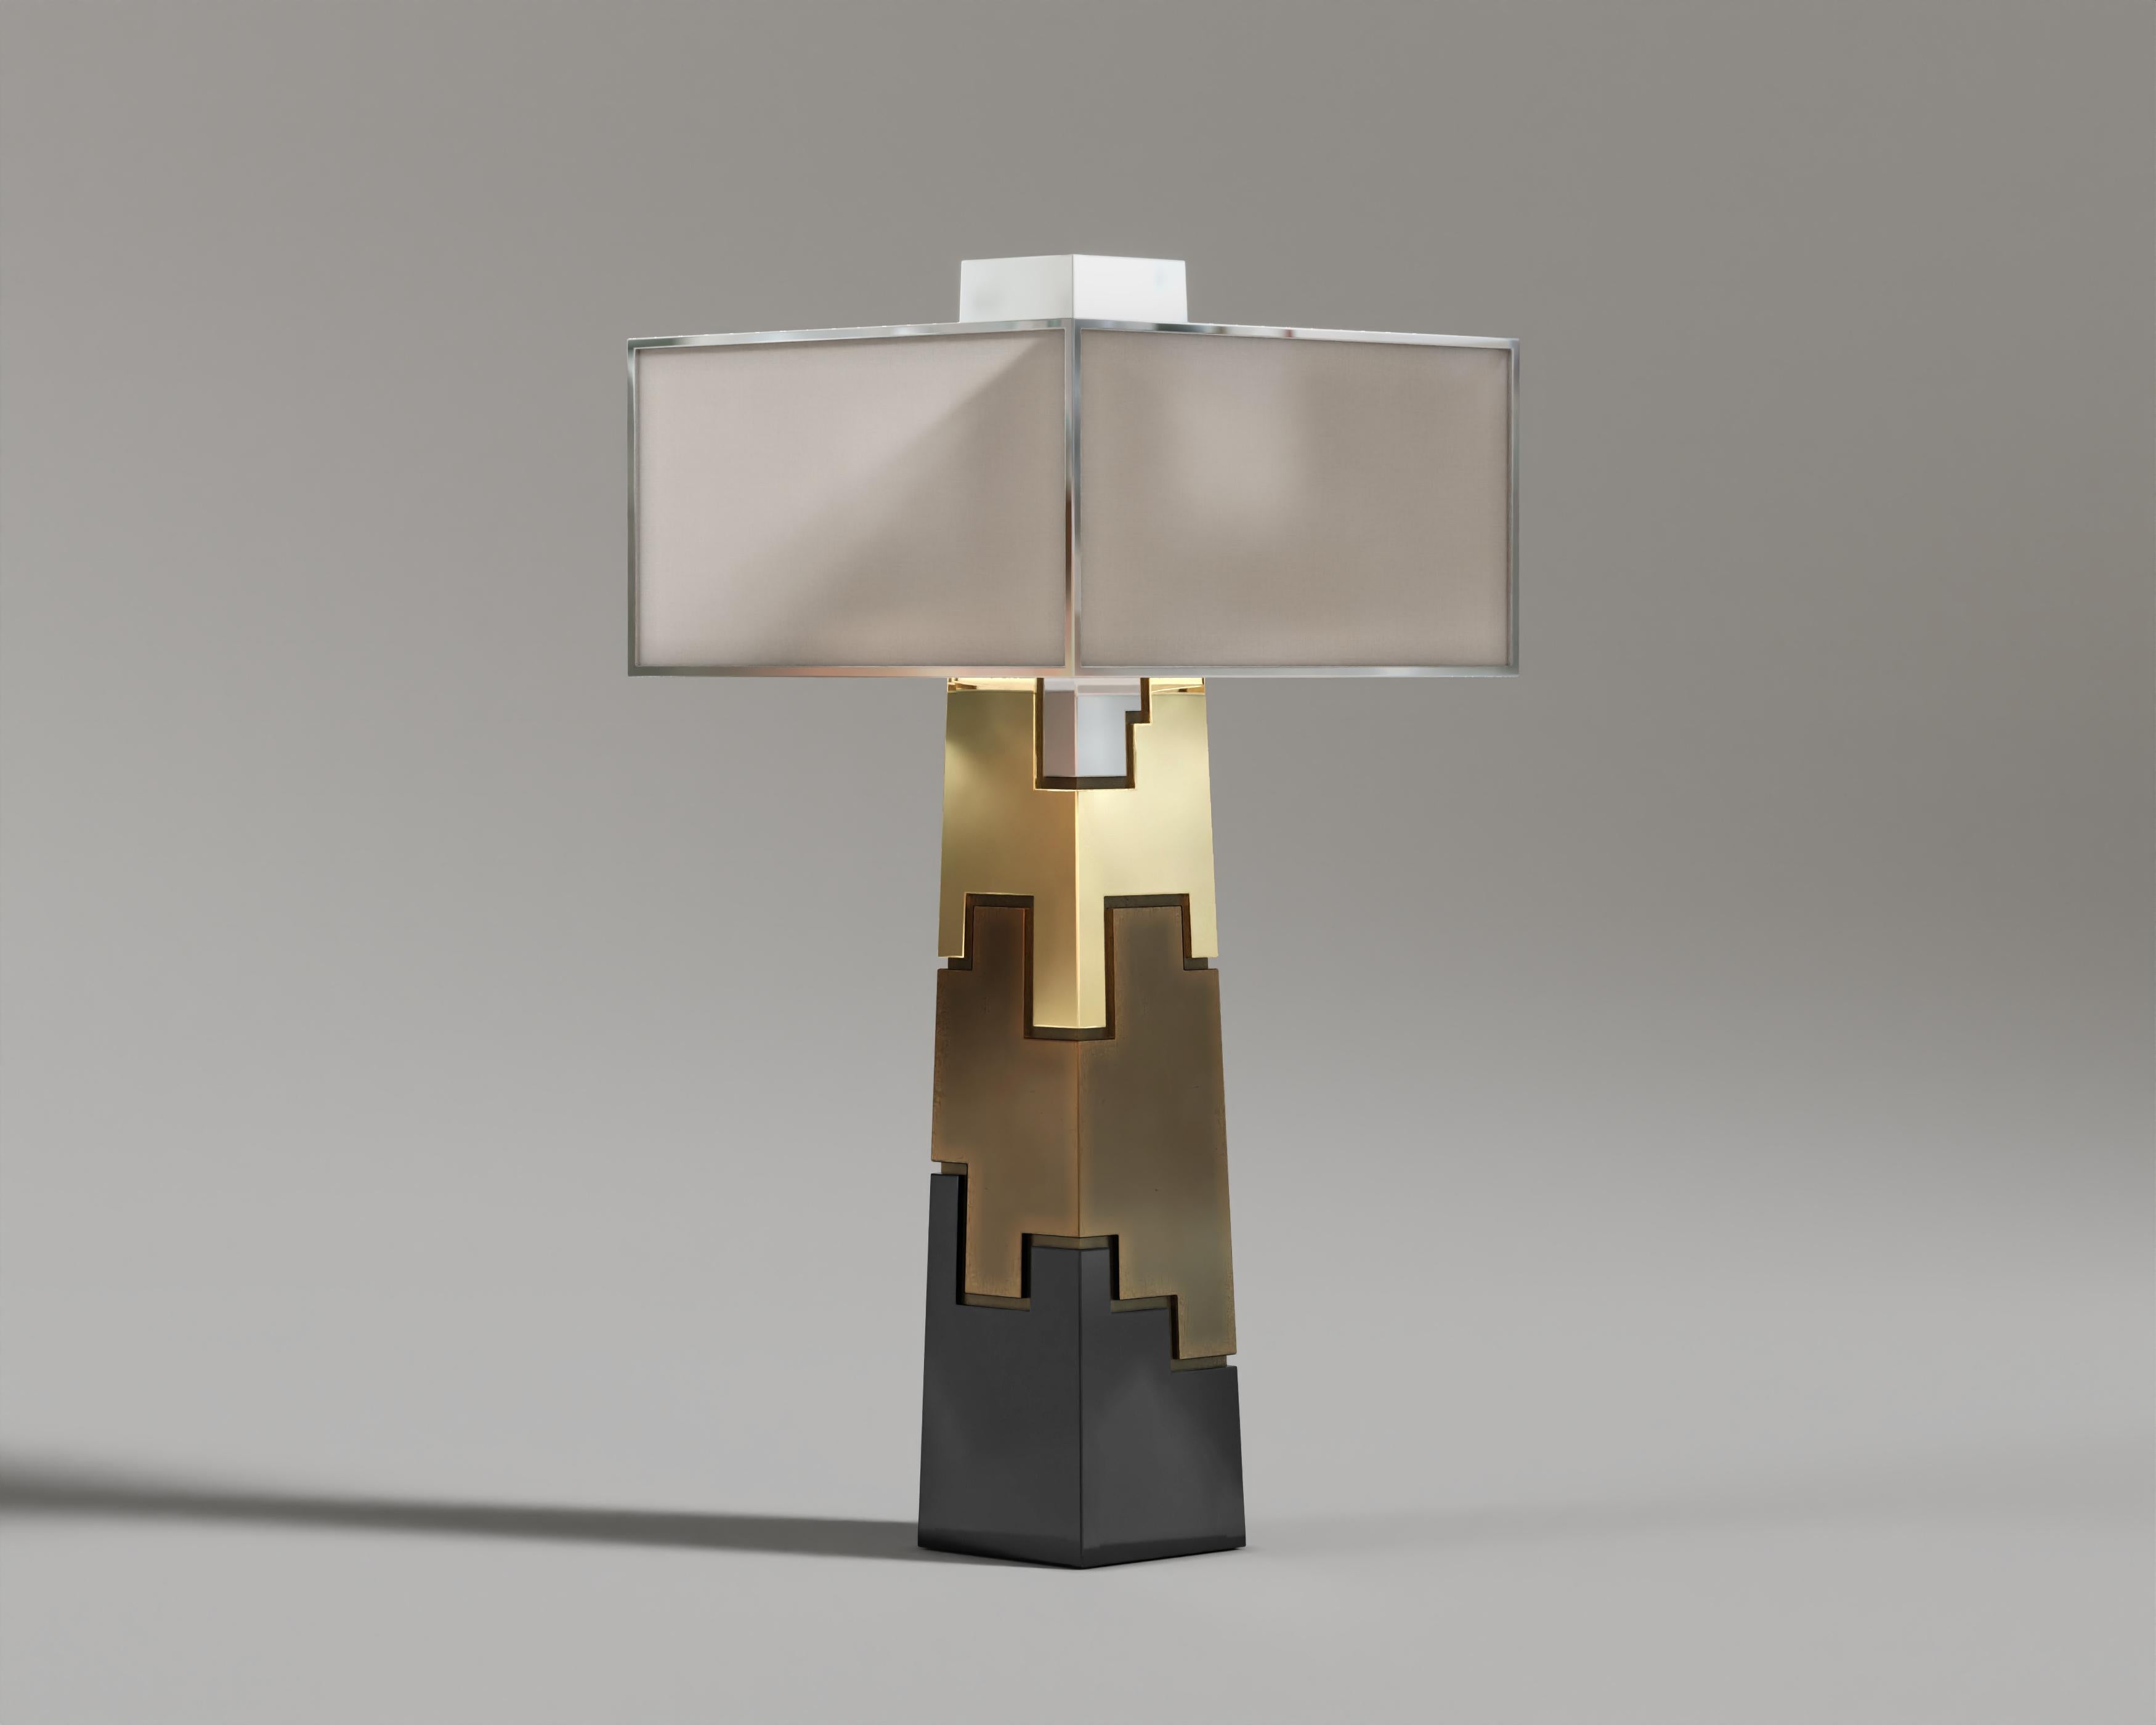 Fragmin Tischlampe

Elegante, luxuriöse Fragmin-Tischleuchte mit schlankem, zylindrischem Design, gefertigt aus schwarzem Lack, Bronzeakzenten und reichhaltigen Furniermaterialien für eine zeitlose und opulente Ästhetik.

Die MATERIALIEN und Größen